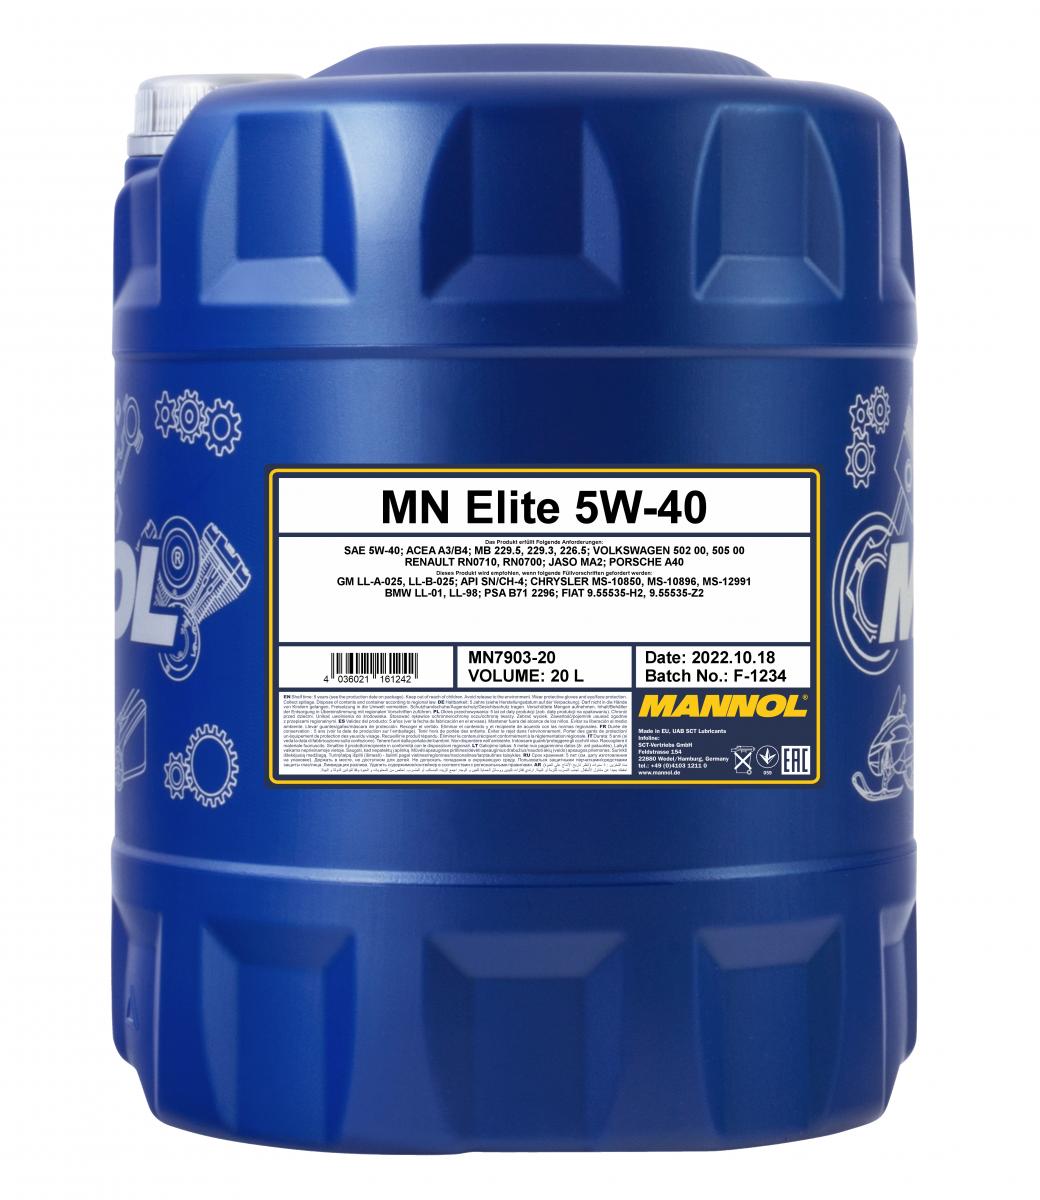 MN Elite 5W-40